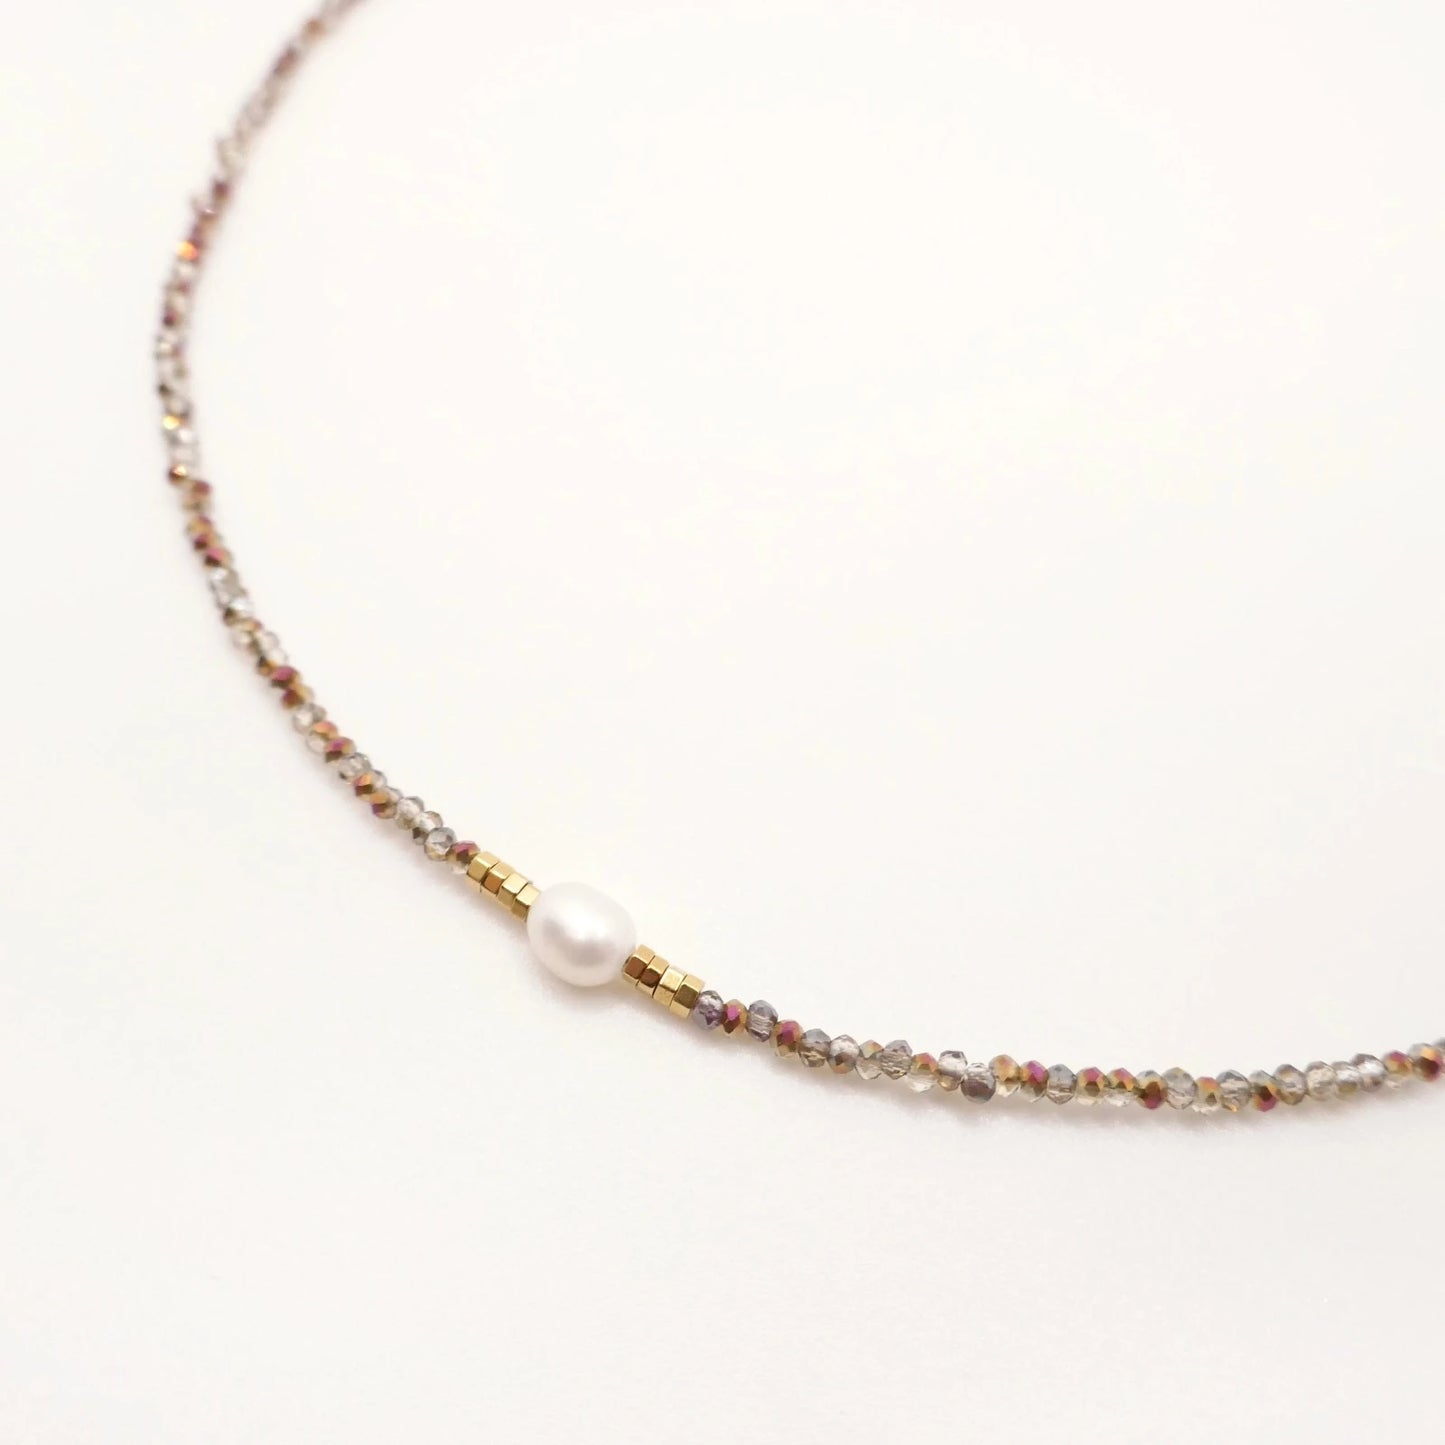 Fin collier pour femme avec de petites perles transparentes irisées et une belle perle d'eau douce au centre